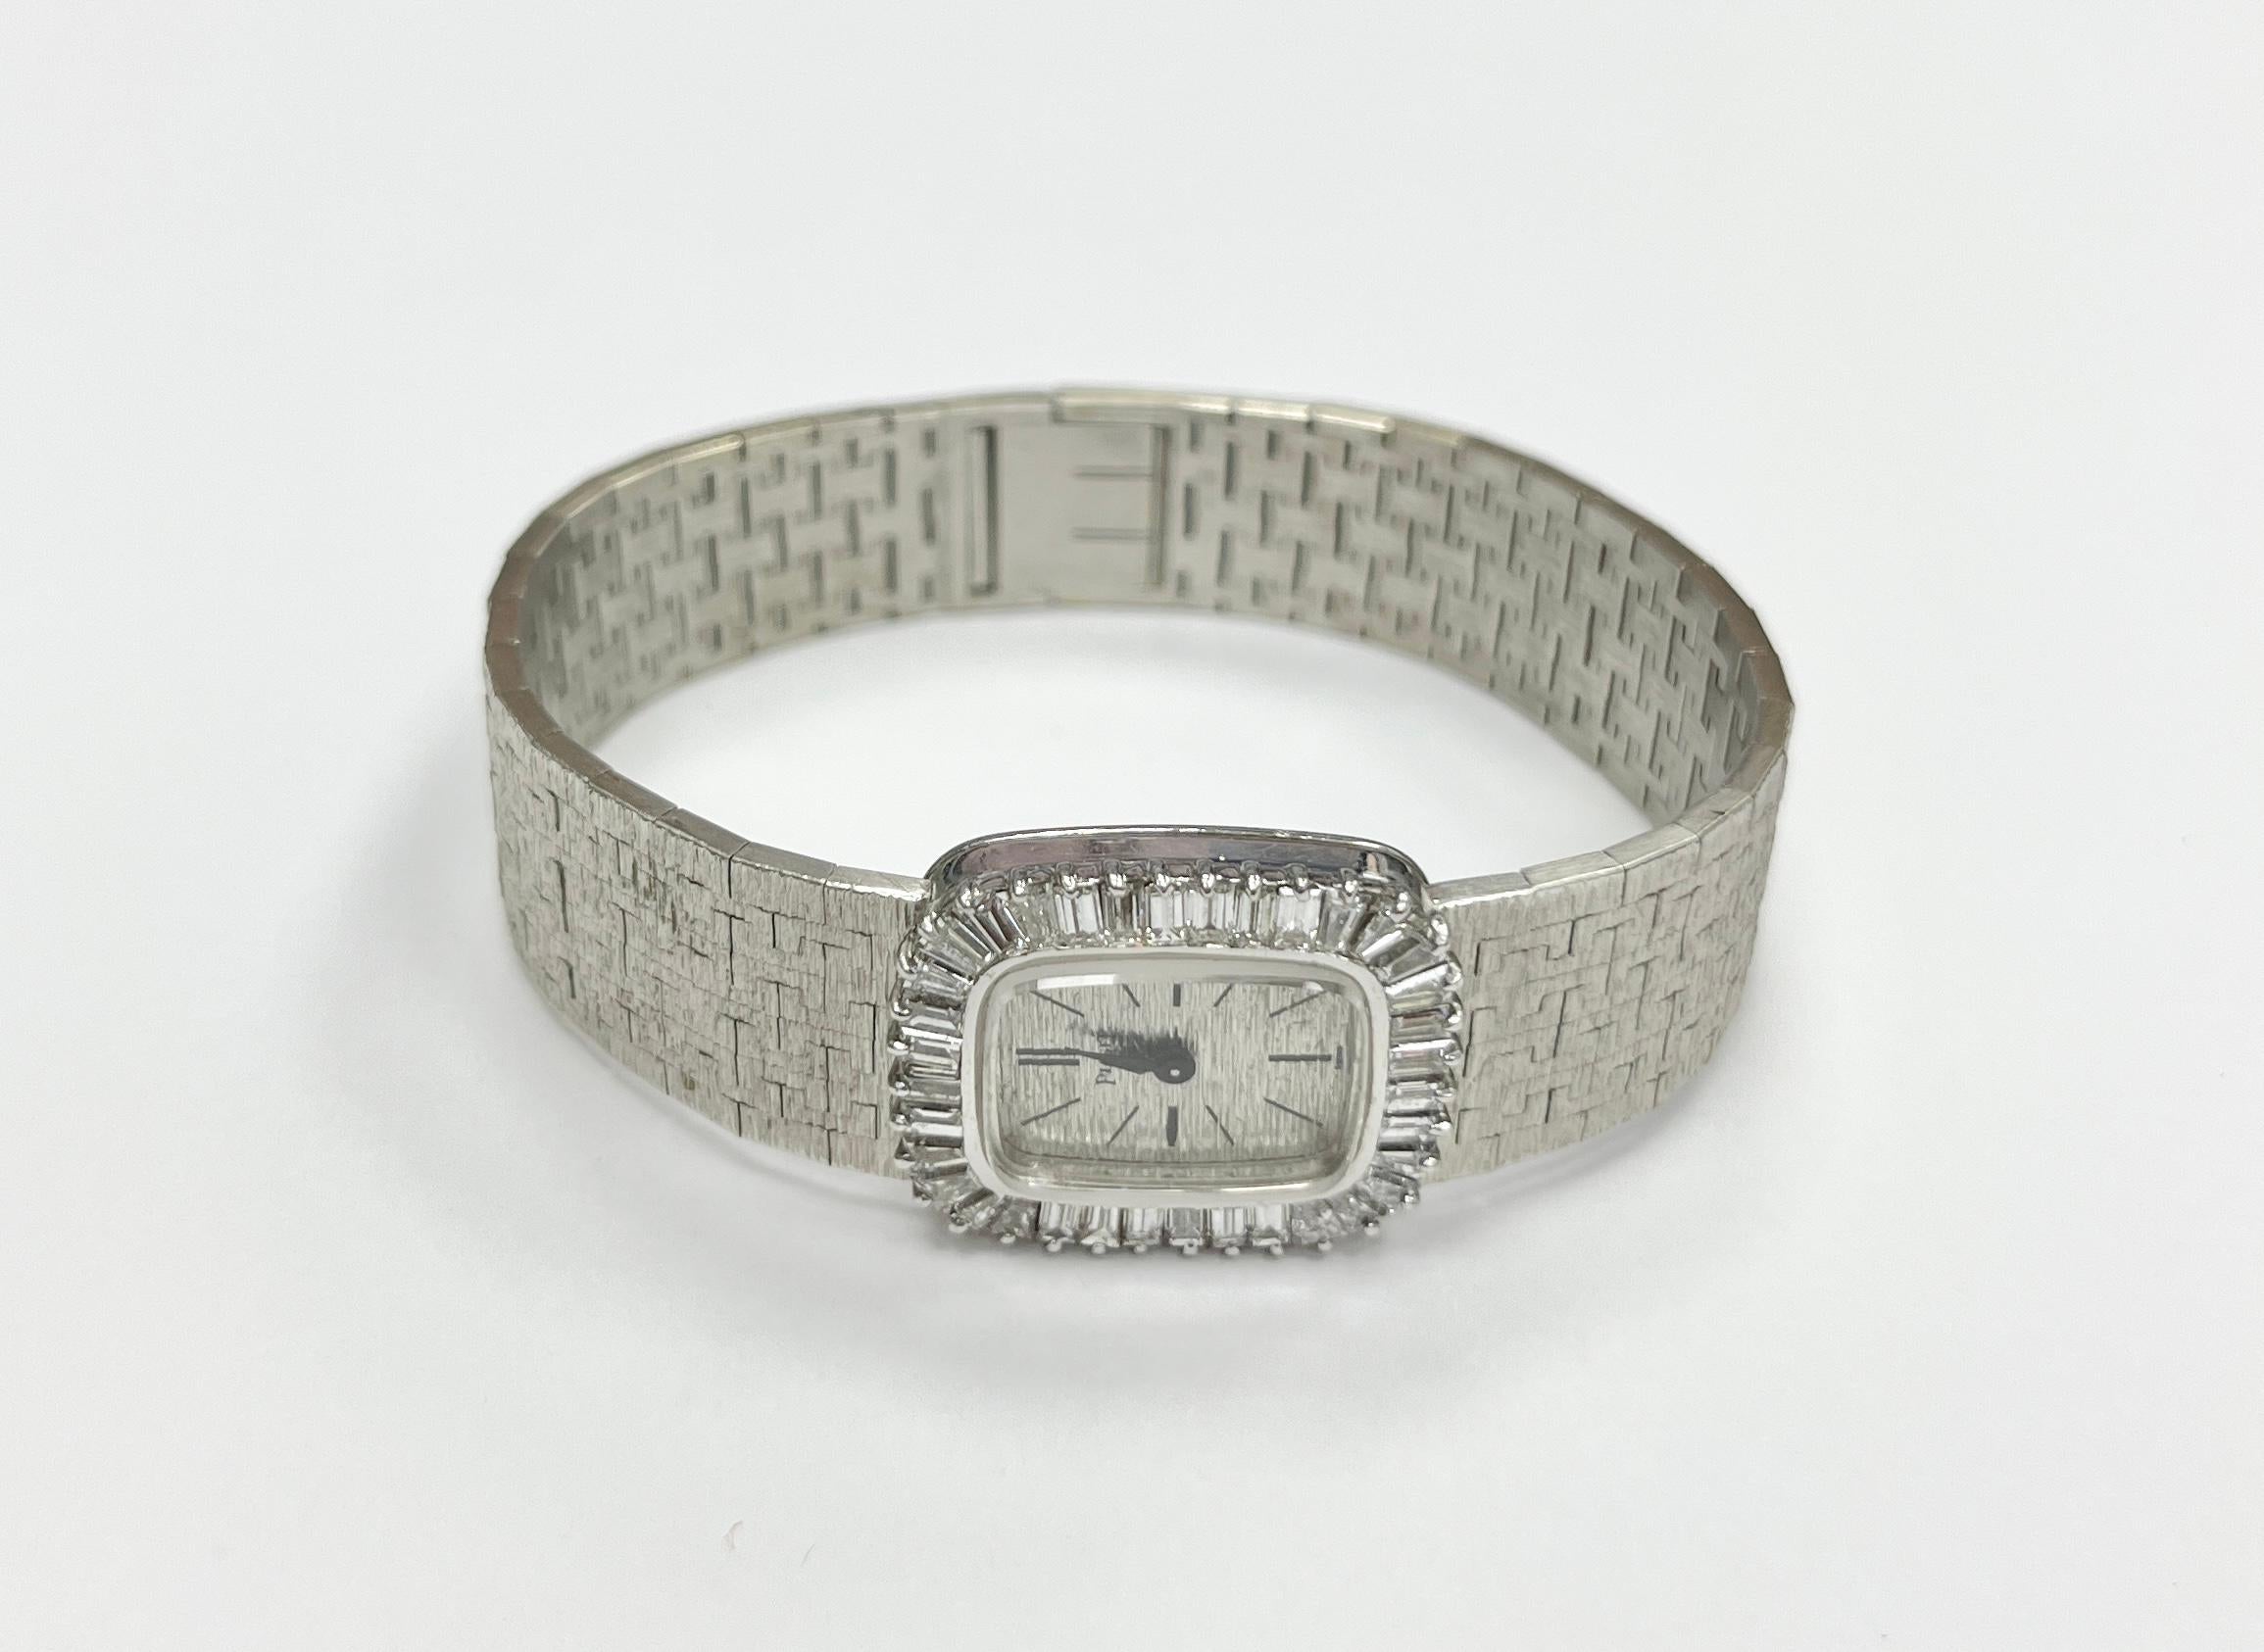 1960' Piaget Montre de dame en or blanc 18K avec lunette diamantée, contenant de nombreux diamants baquette droits et effilés, 35 dias approx 1.10 cts, cadran argenté texturé, mouvement à remontage manuel, bracelet intégré à mailles texturées,